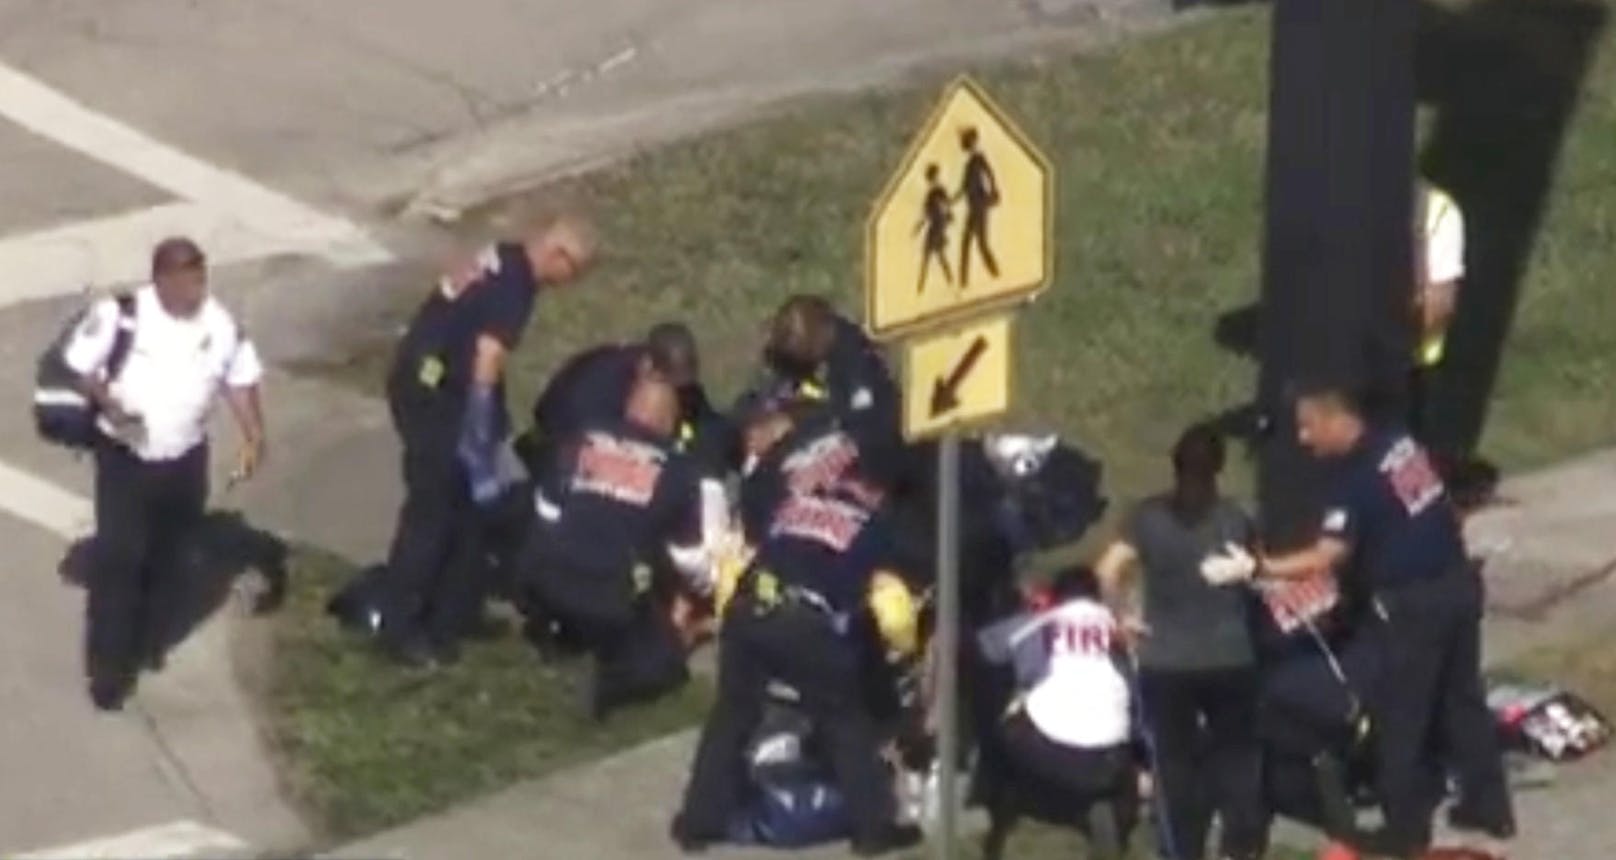 Bei dem blutigen Amoklauf an einer Schule in Parkland, Florida (etwa 55 km nördlich von Miami) sollen mindestens 14 Opfer verletzt worden sein. Es habe auch "mehrere Tote" gegeben, so der örtliche Sheriff.